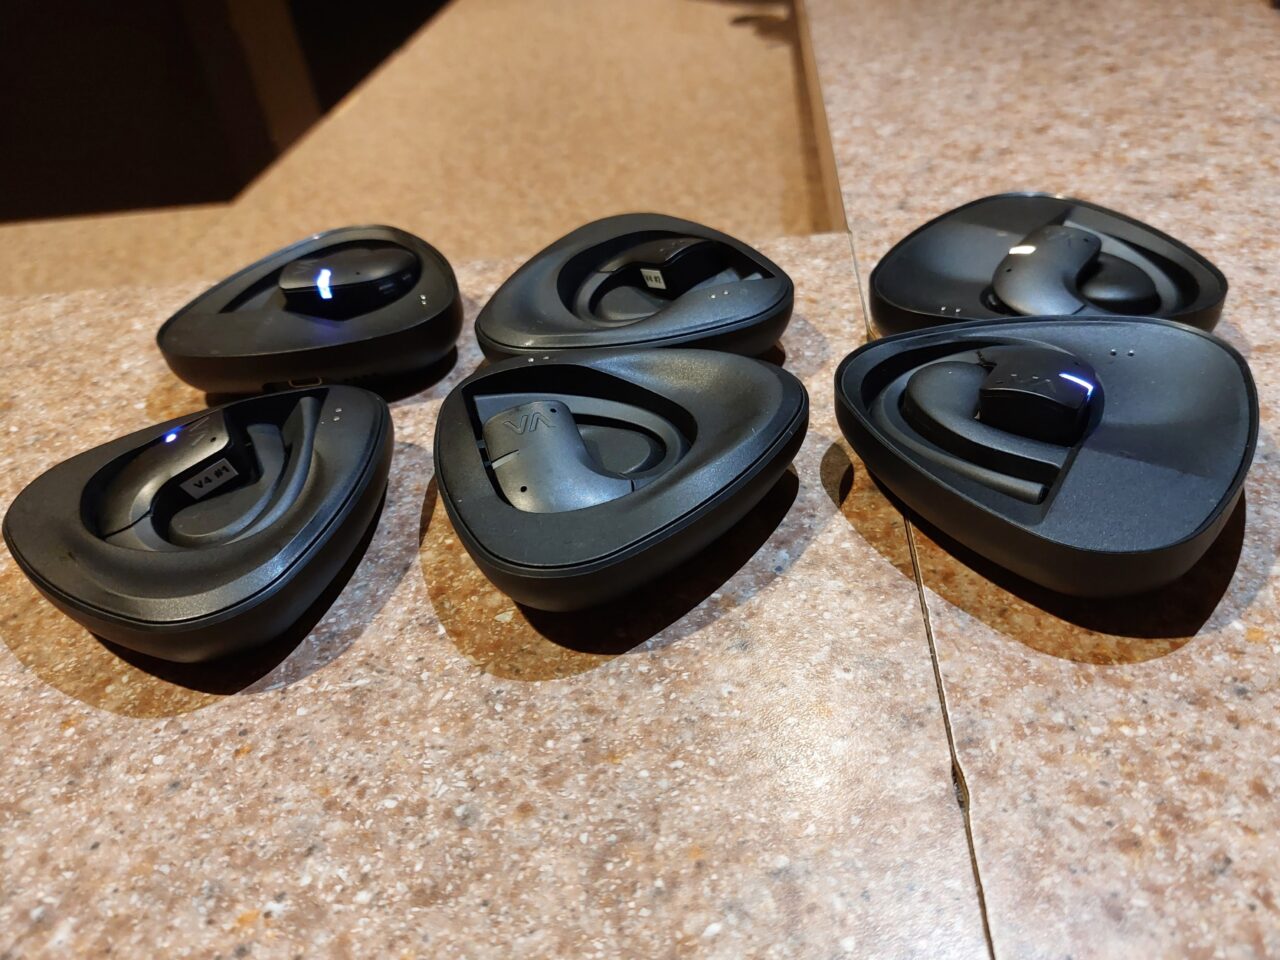 Cztery czarne, otwarte etui do słuchawek bezprzewodowych ułożone na kamiennym blacie.